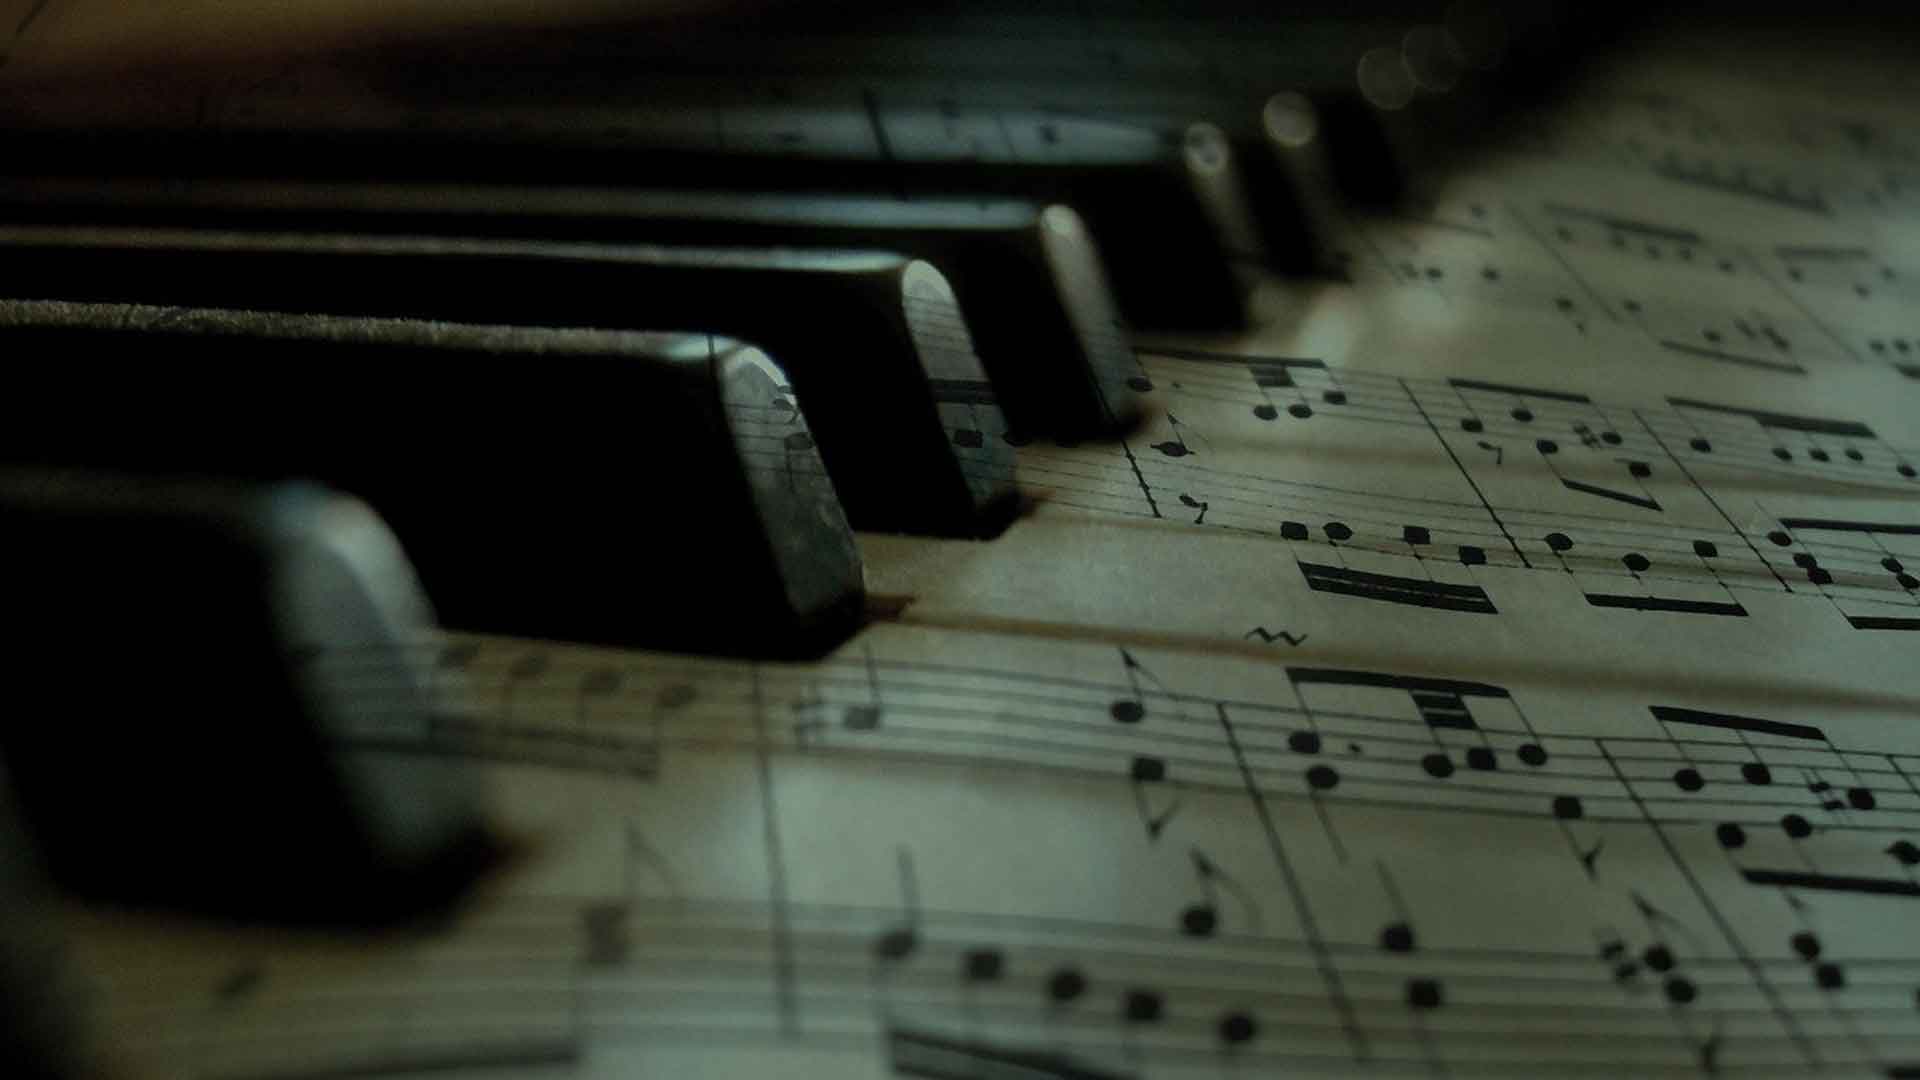 Pianosistema.com el conservatorio de música para pianistas